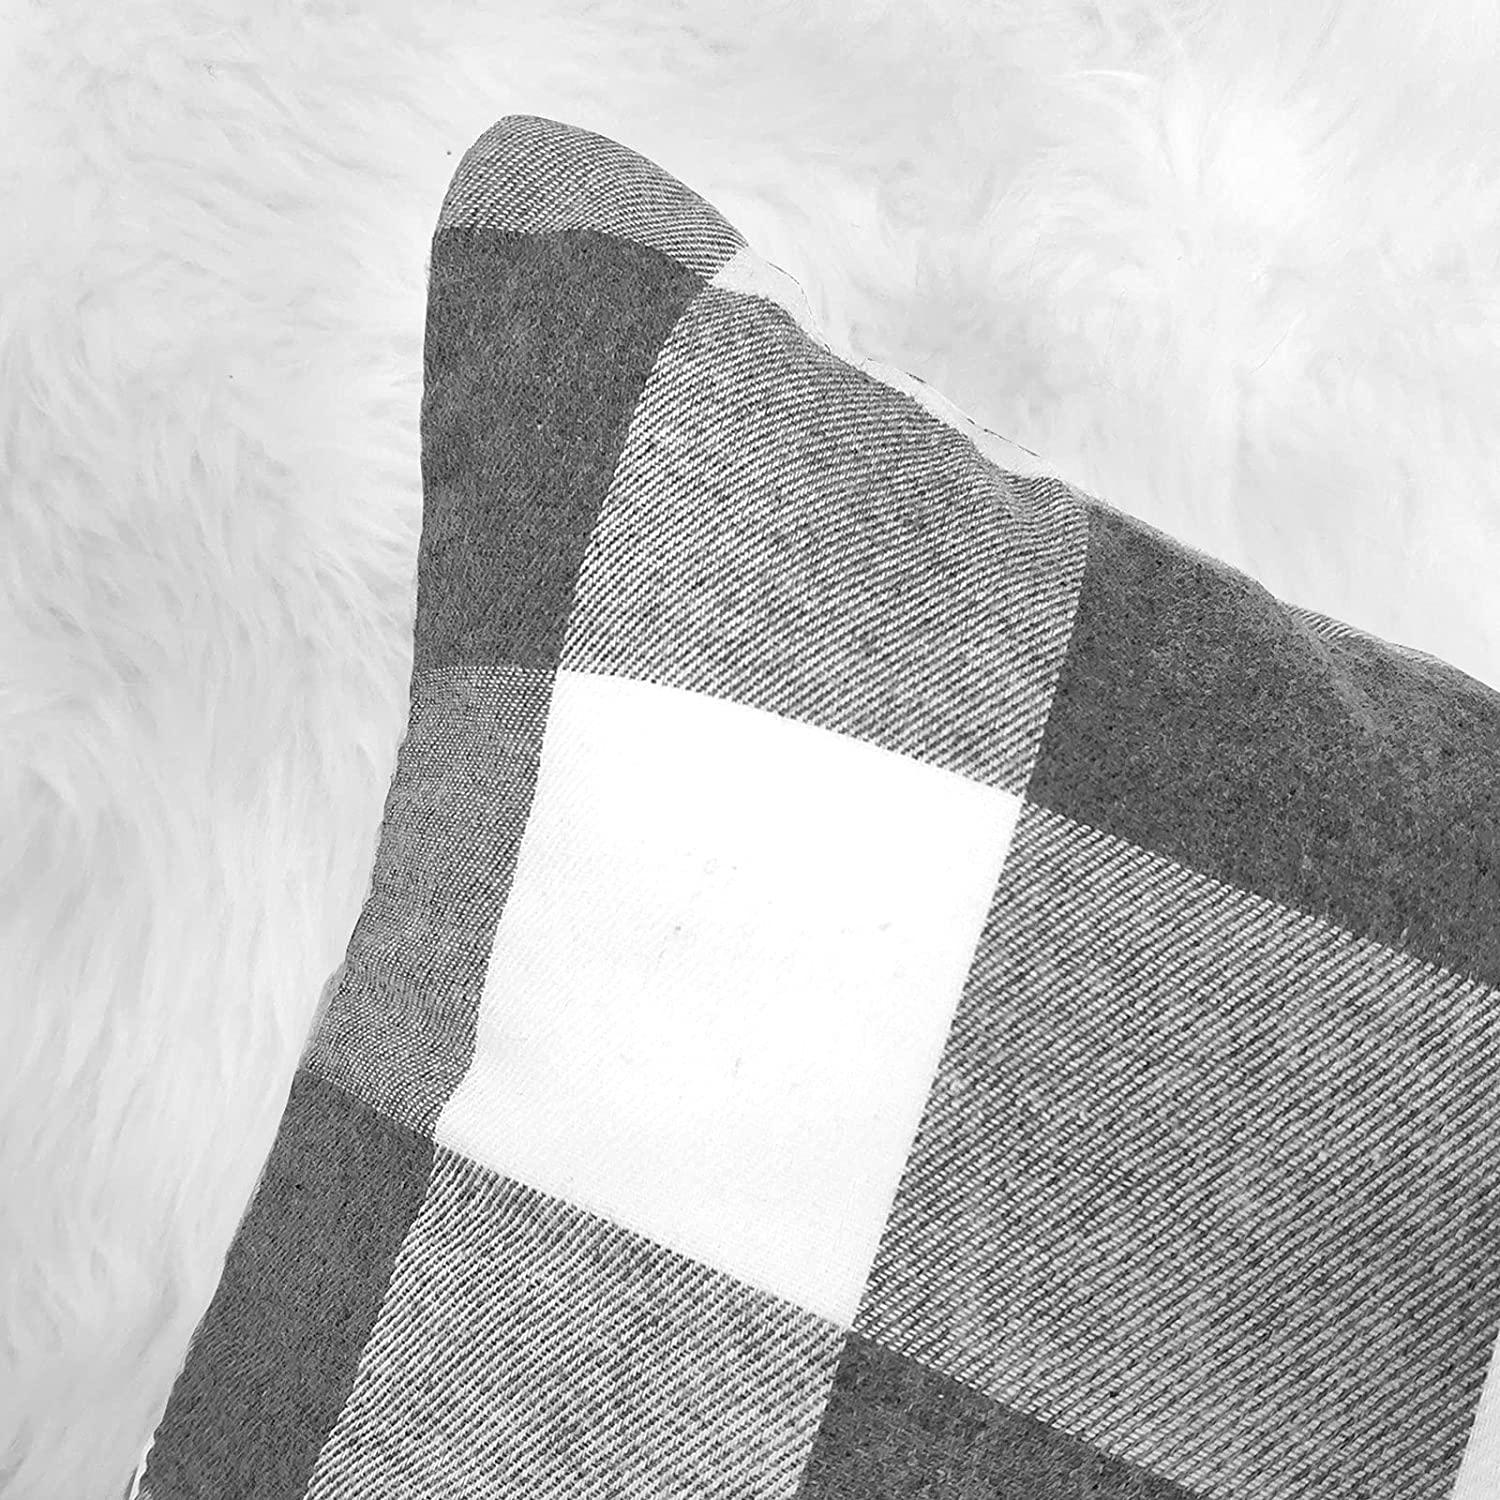 Set of 2 Farmhouse Buffalo Check Throw Pillow Covers 18 x 18 with 2 Bonus Coasters (Grey & White)